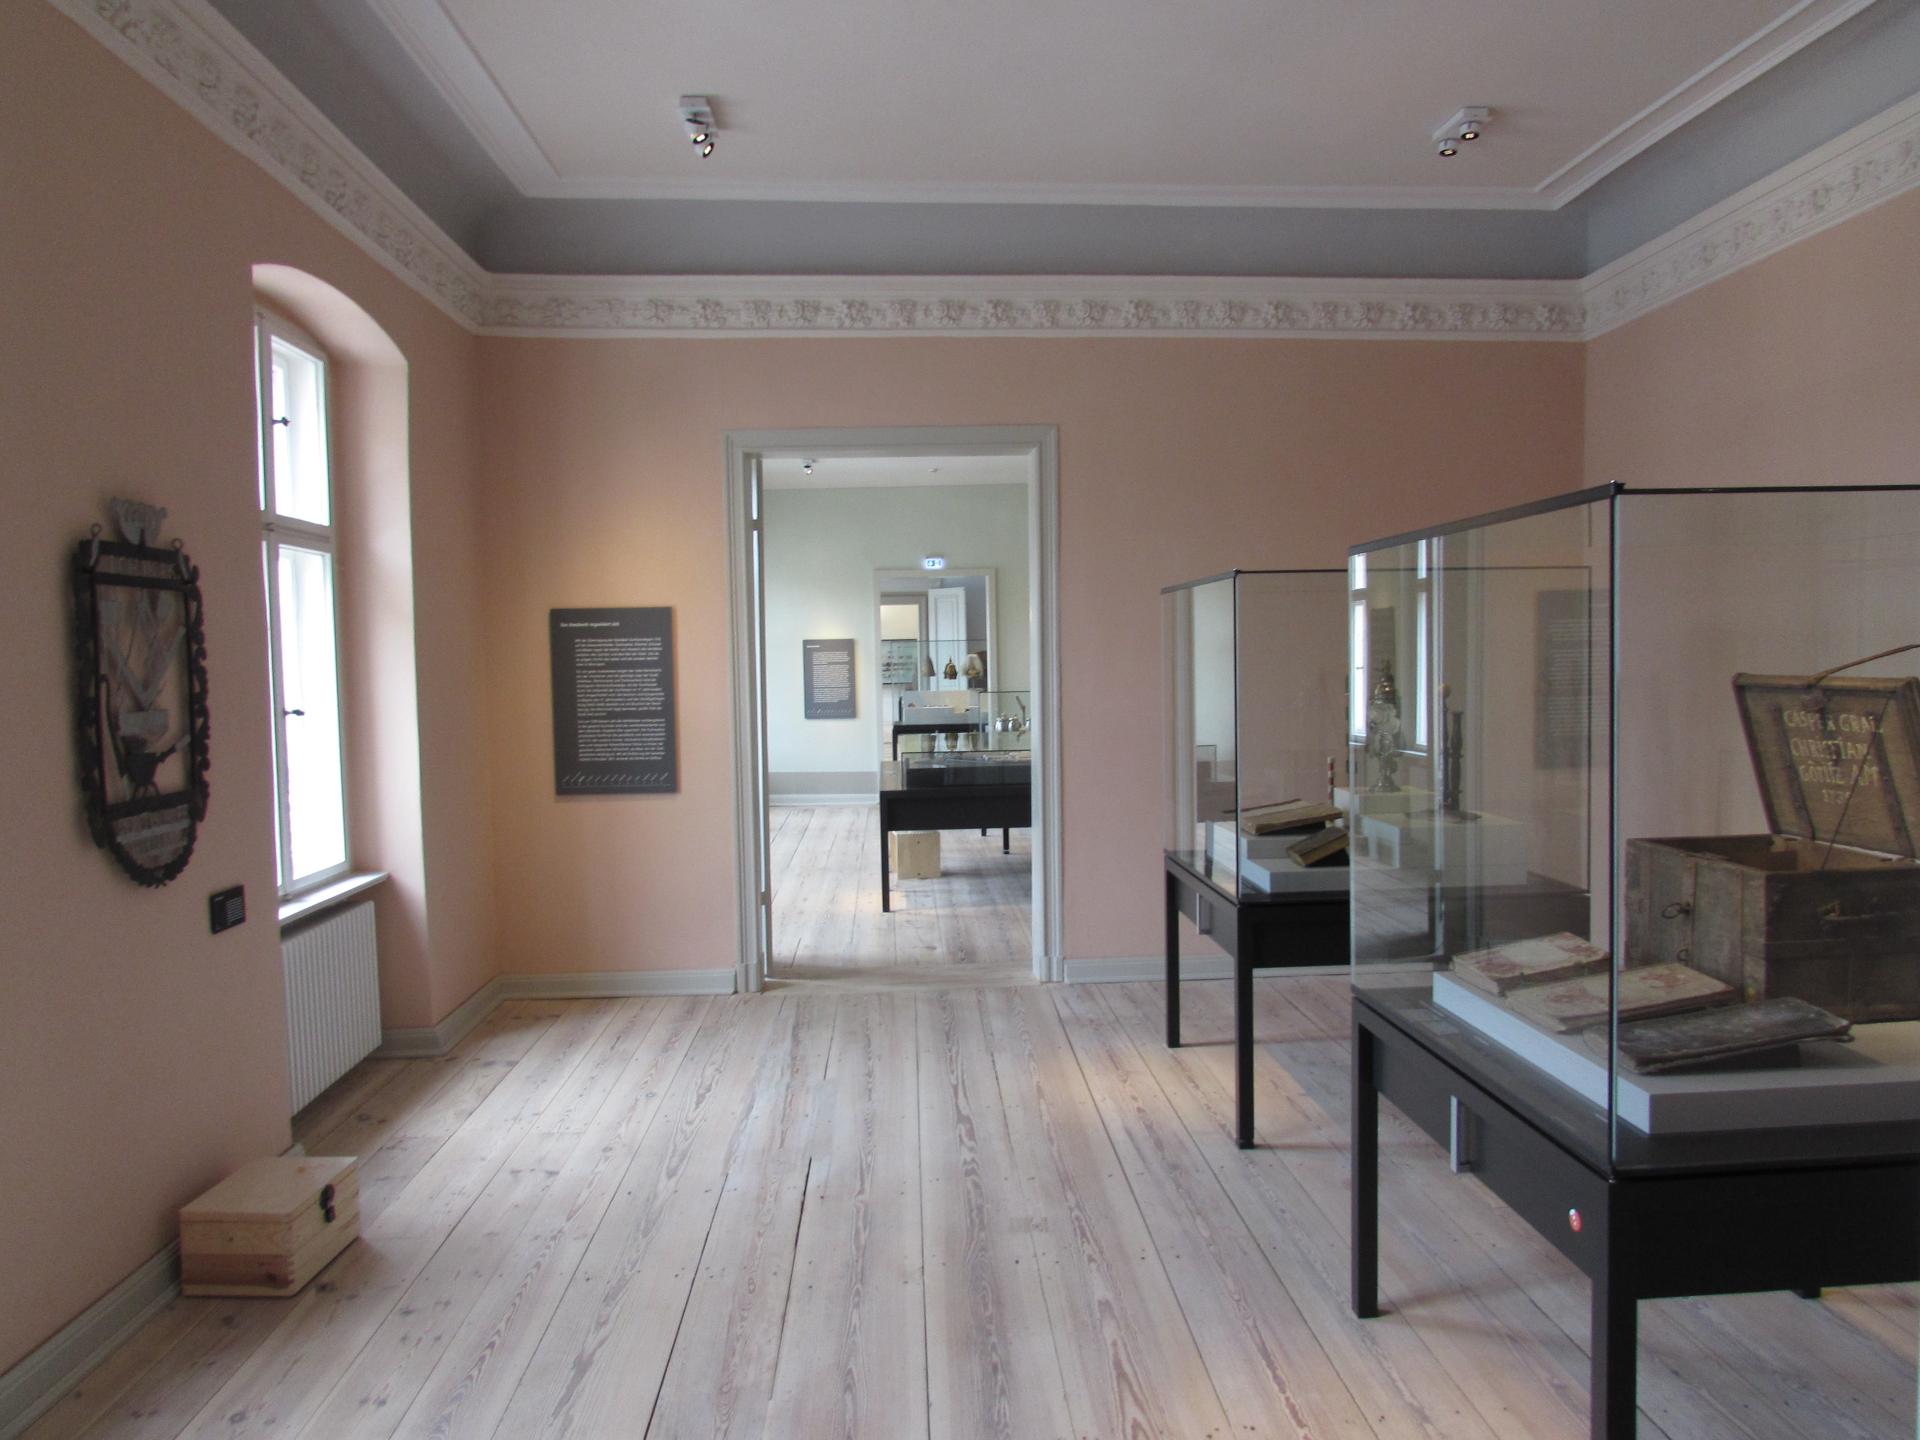 Blick in die Dauerausstellung "Stadt im Wandel", Foto: Museum Neuruppin